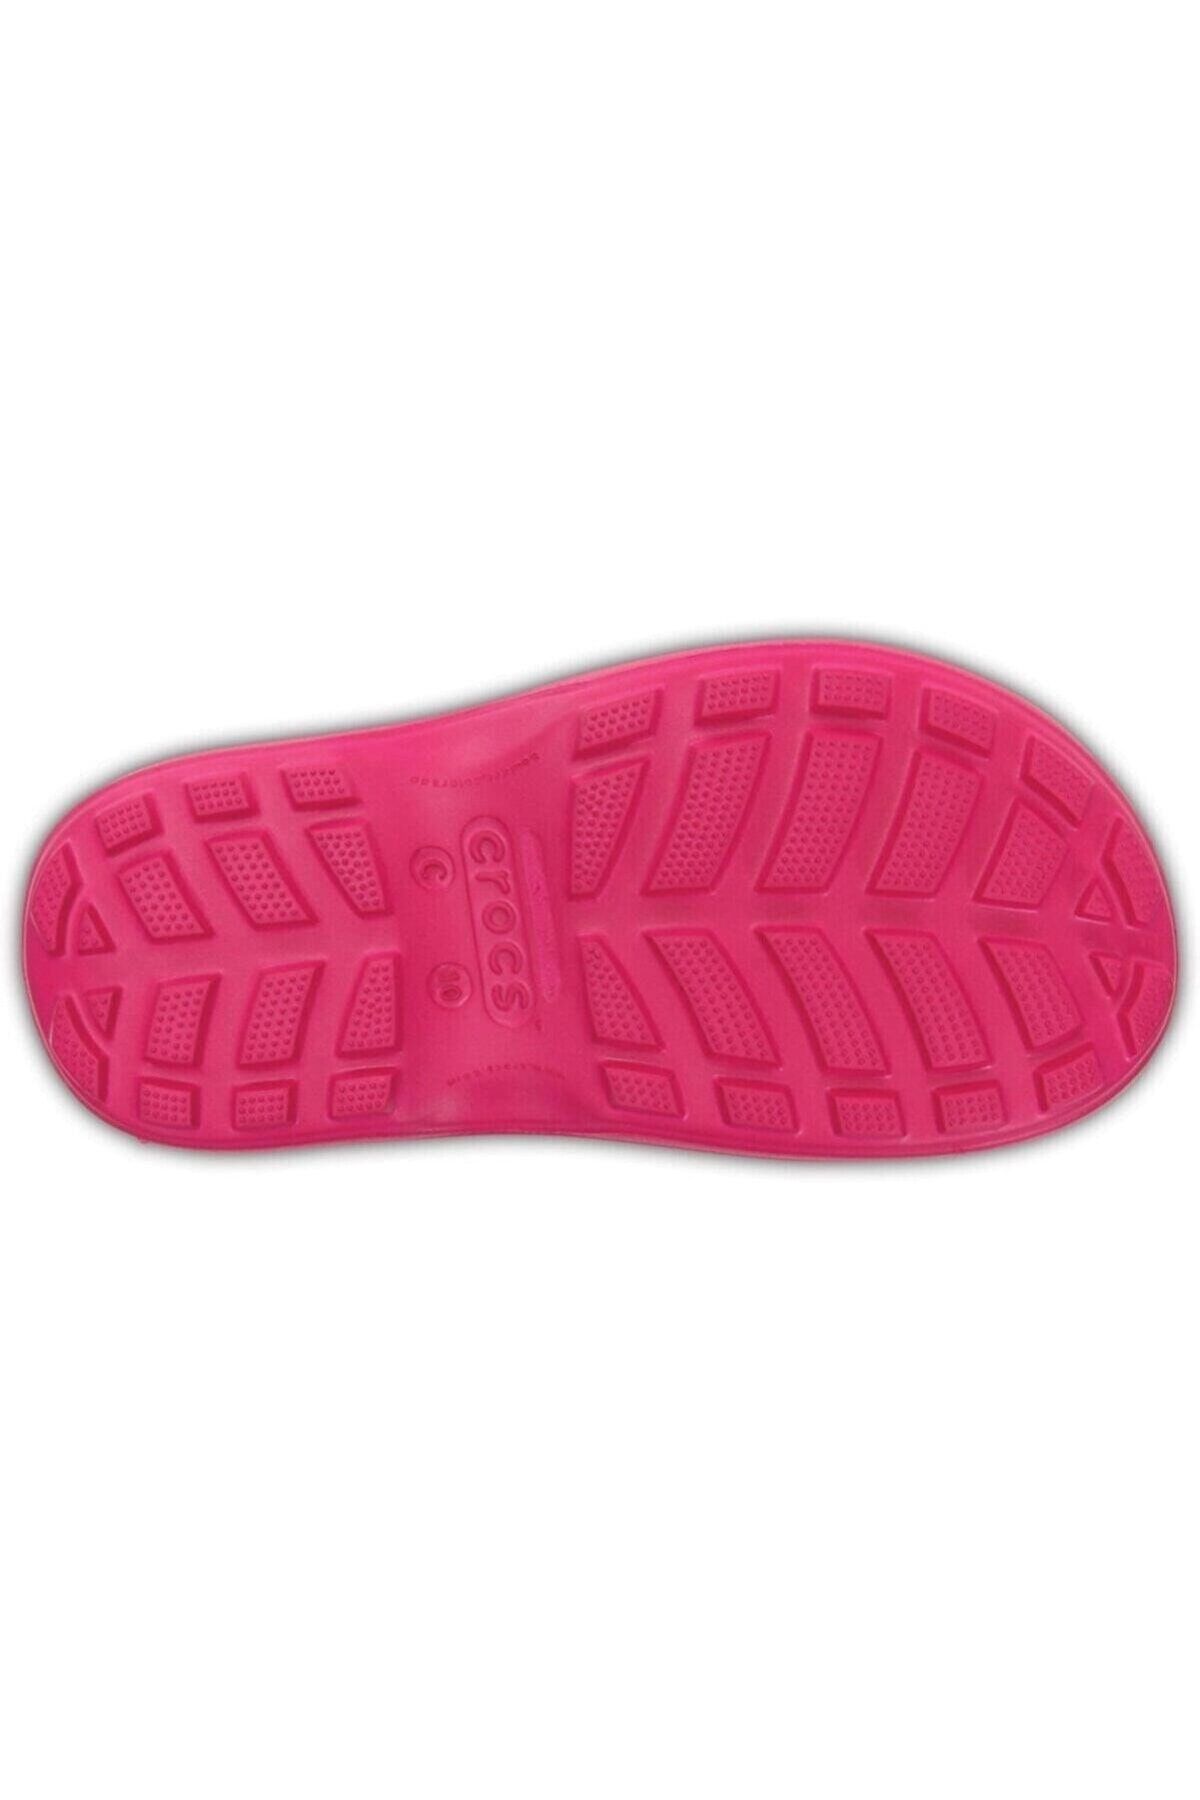 Crocs Crocs Handle It Rain Boot Kids 12803-6X0